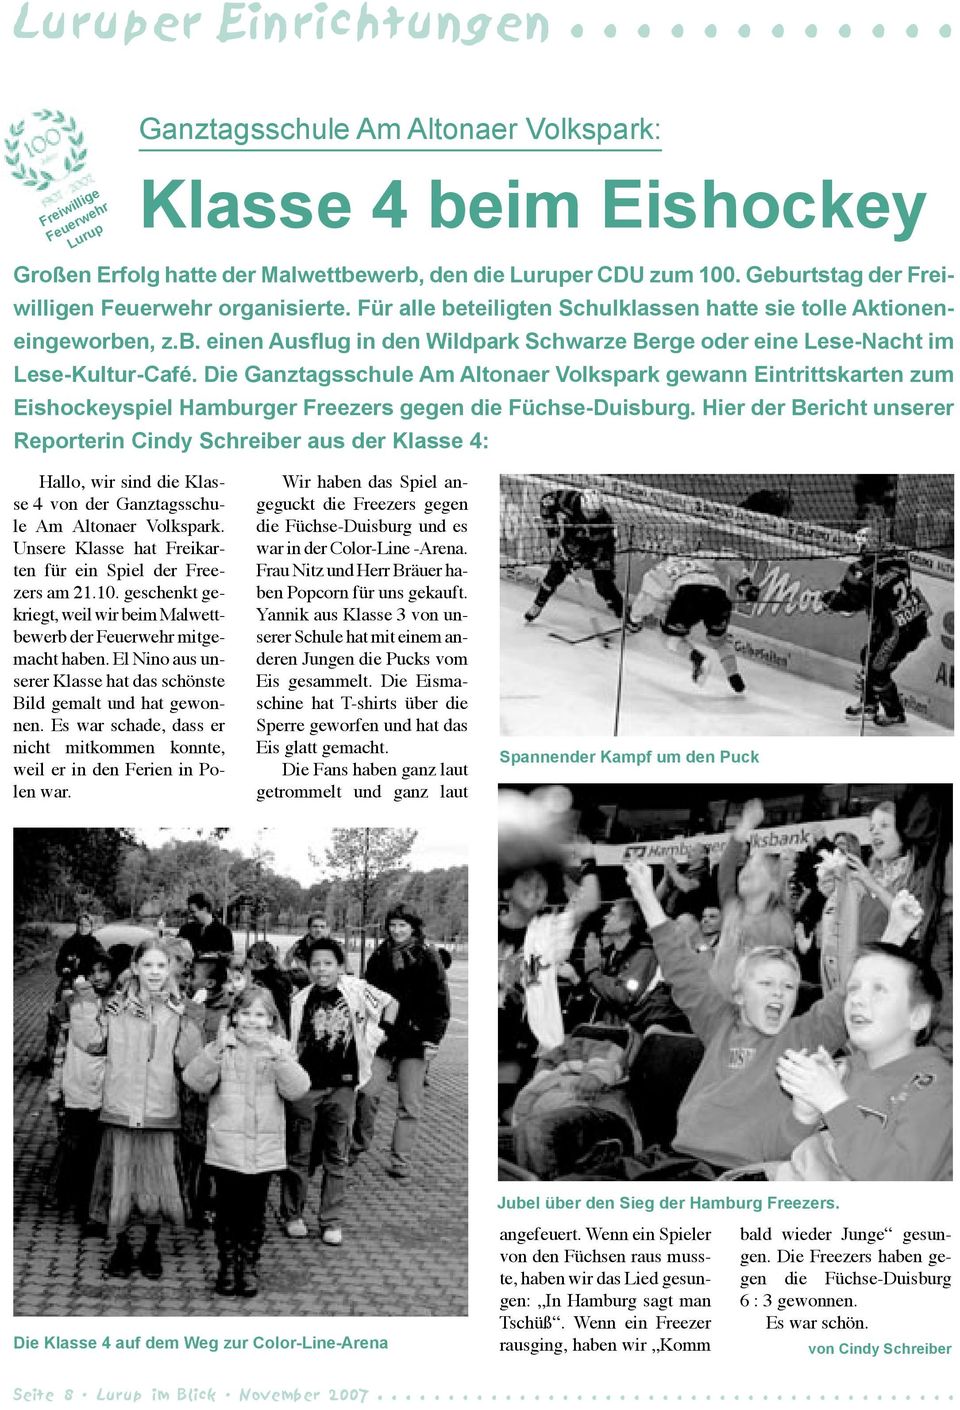 Die Ganztagsschule Am Altonaer Volkspark gewann Eintrittskarten zum Eishockeyspiel Hamburger Freezers gegen die Füchse-Duisburg.